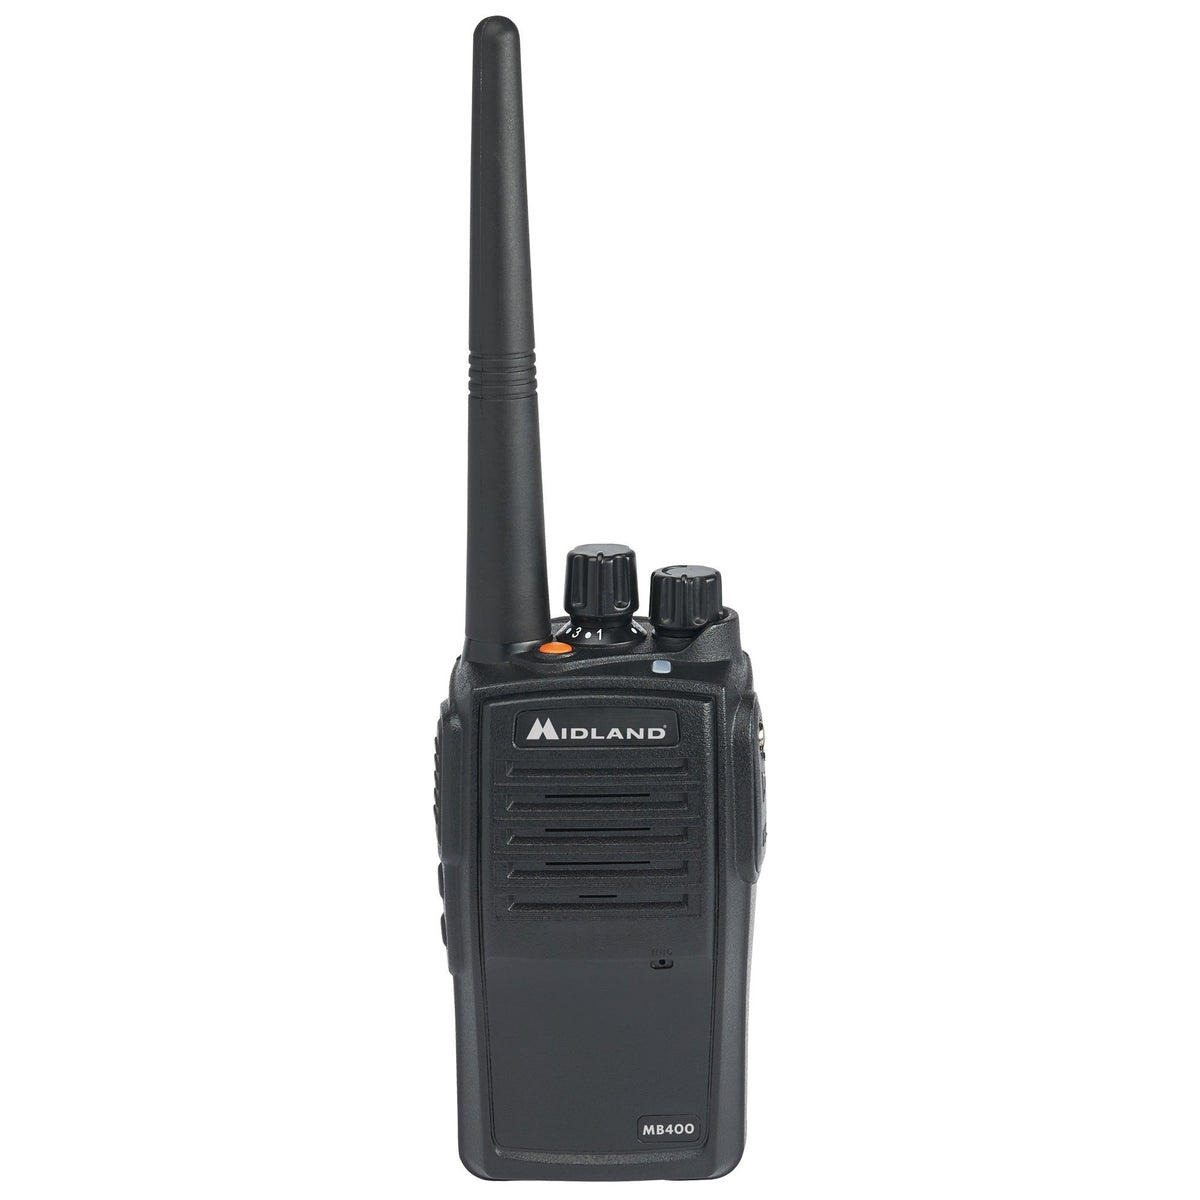 MB400 DAB Radio with Bluetooth Speaker - Black